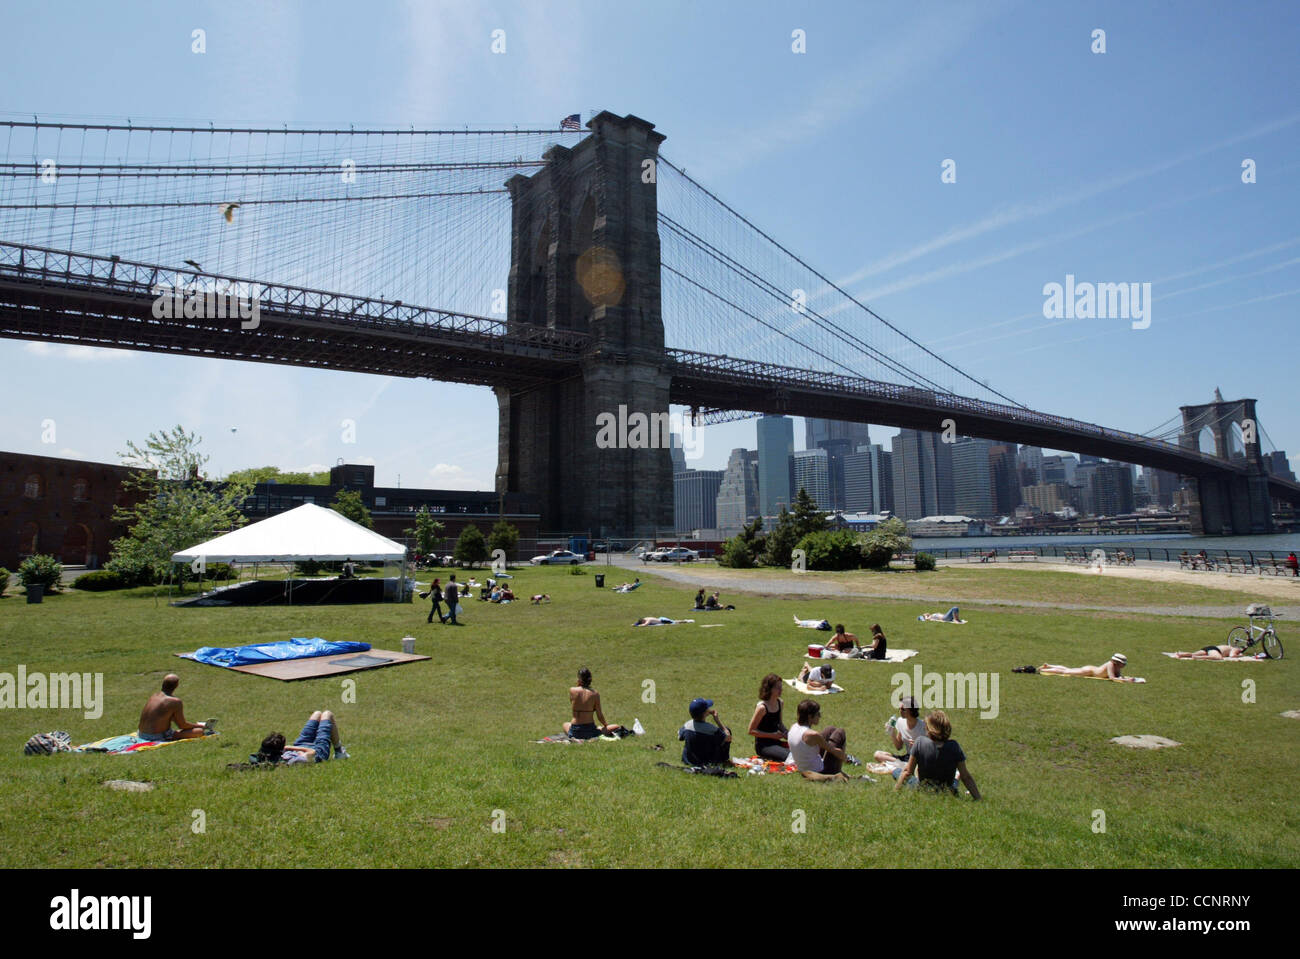 Jun 06, 2003 ; Brooklyn, NY, USA ; les résidents de Brooklyn profitez d'une journée ensoleillée à l'Empire Fulton Ferry State Park entre le pont de Brooklyn et Manhattan Bridge. Banque D'Images